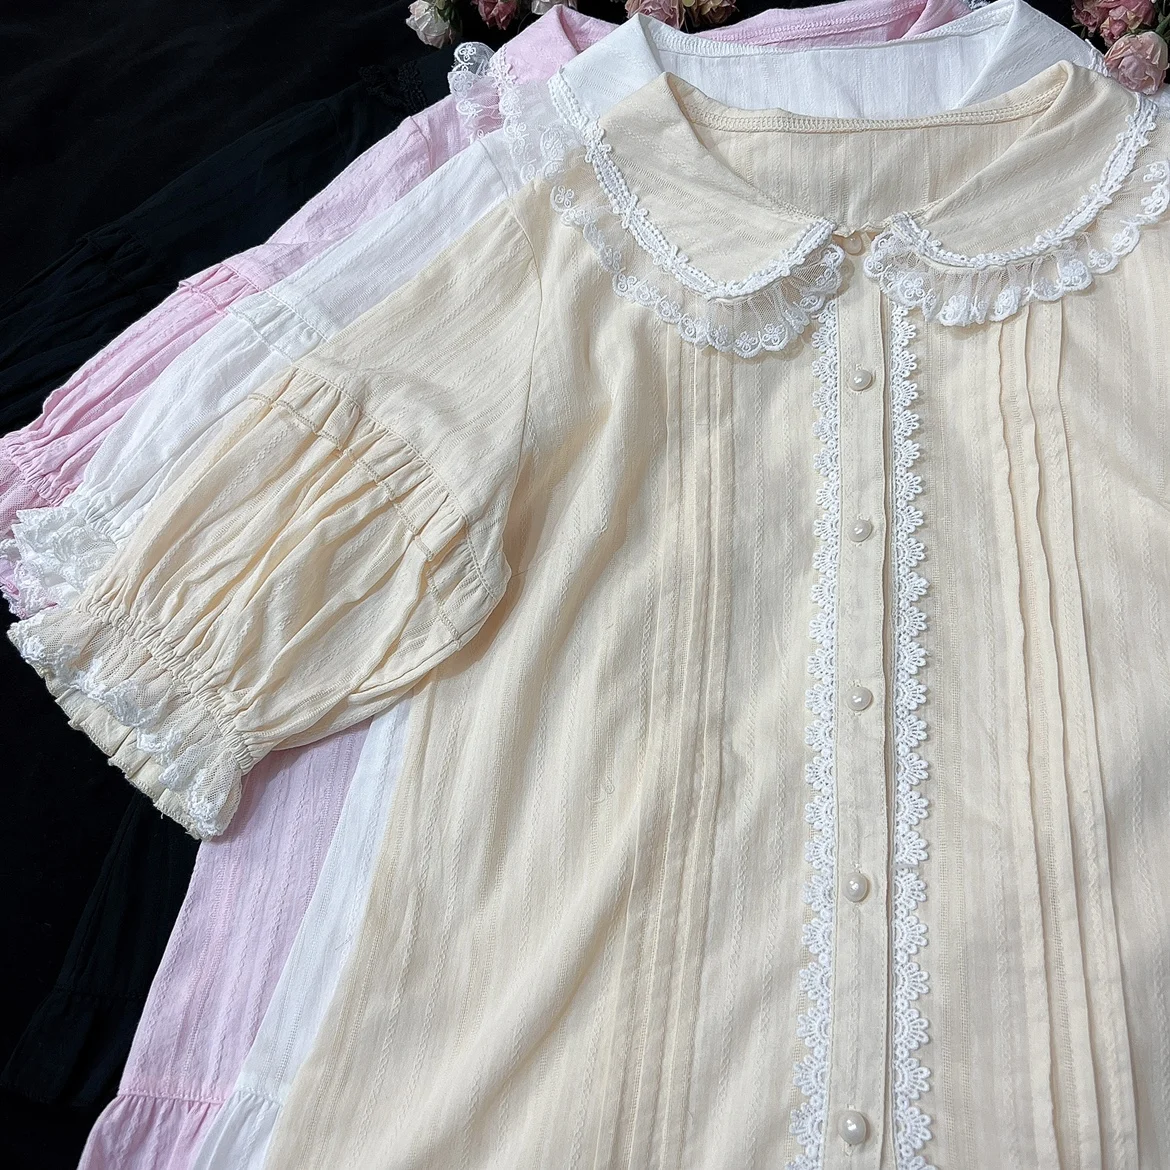 

Little Daisy Cotton Striped Summer Women's Lolita Short Sleeve Peter Pan Collar Blouse Lace Trim Little Bows Cute Shirt